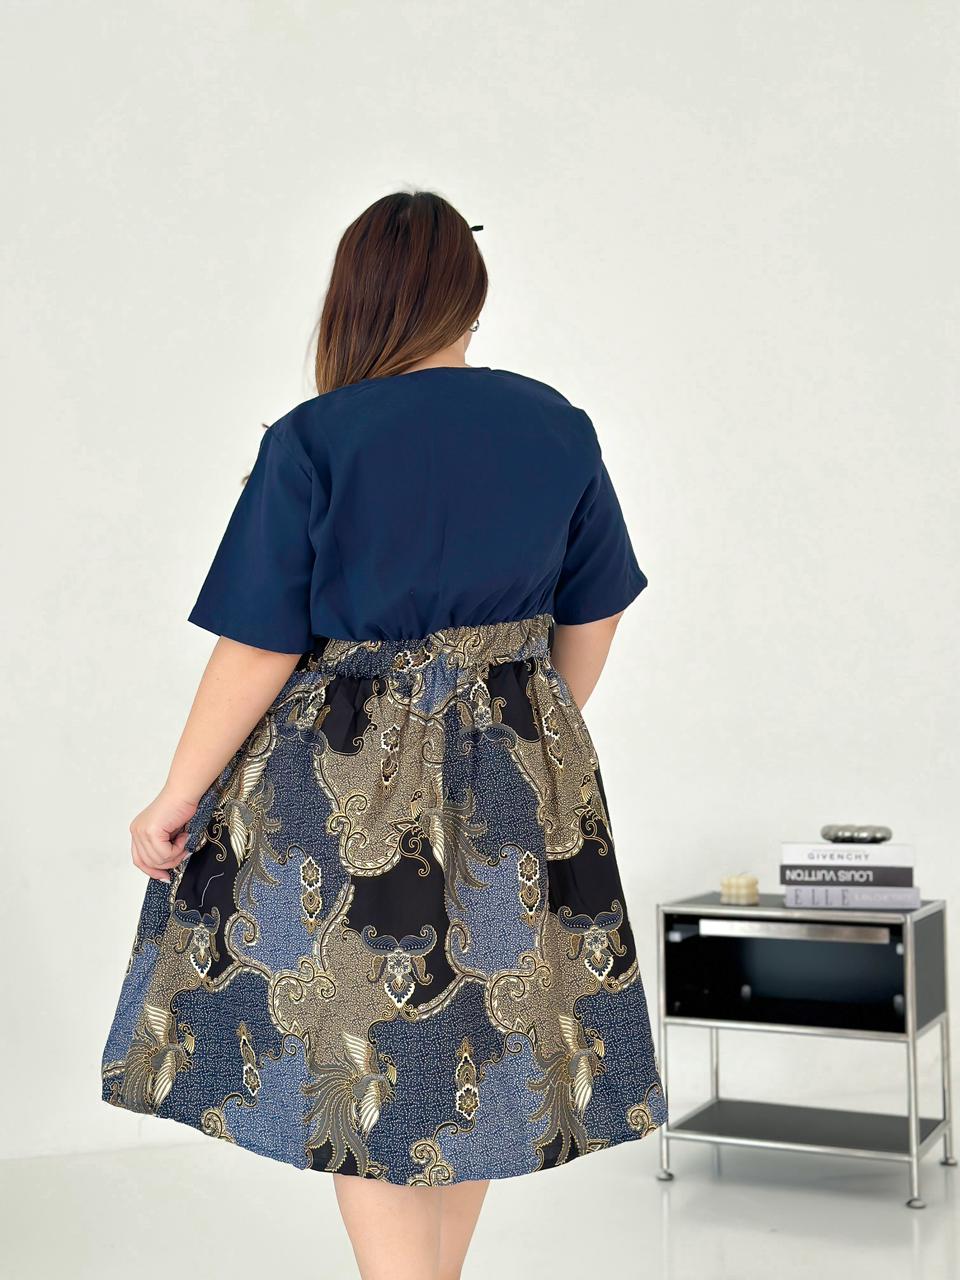 Dress Batik-Adista Biru ATRACTIV